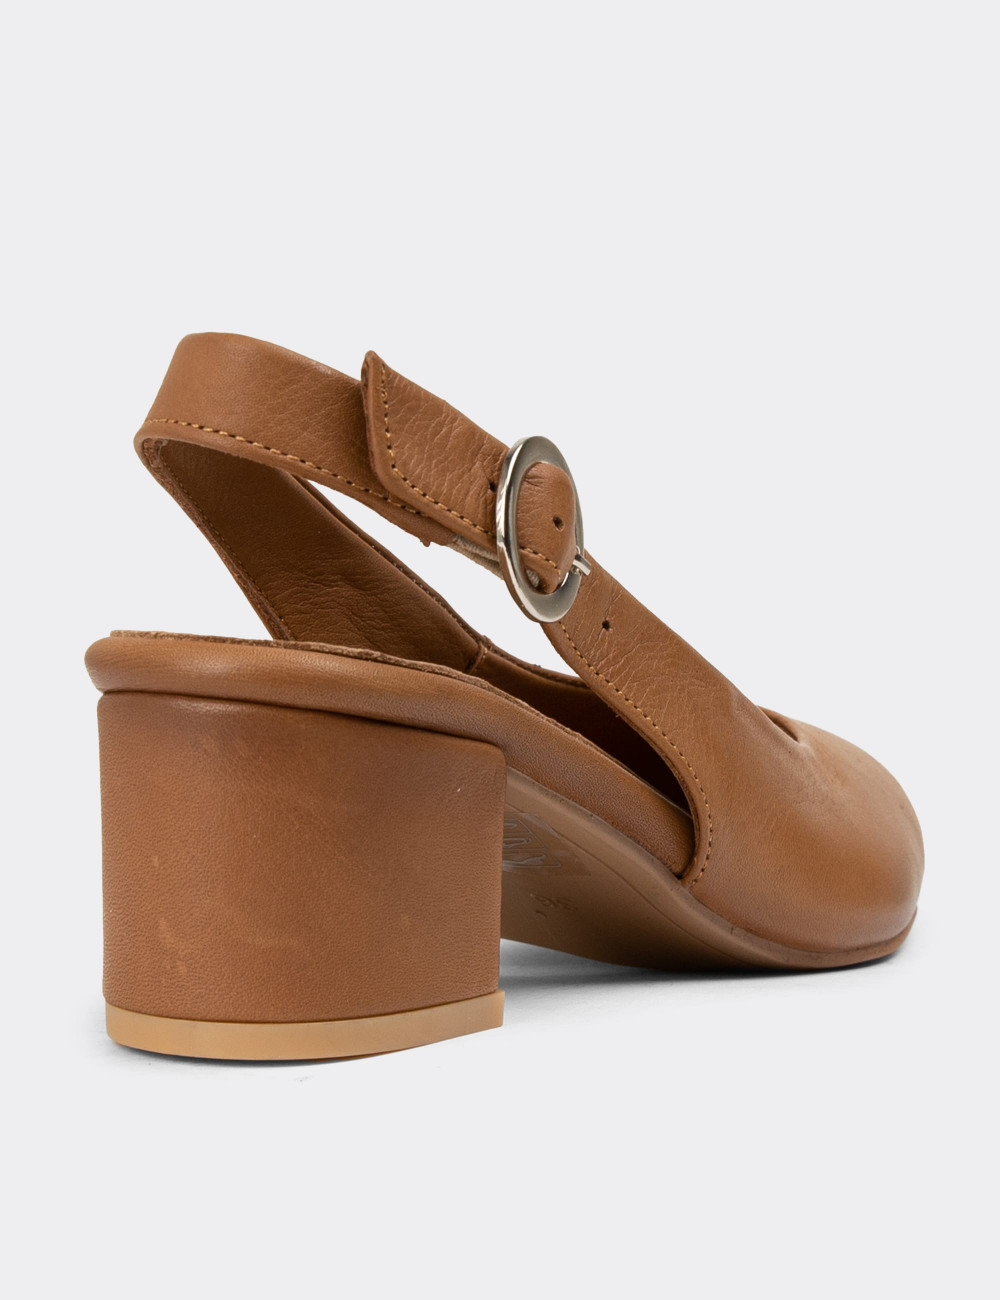 Hakiki Deri Kahverengi Kadın Günlük Topuklu Ayakkabı - A2633ZKHVC01